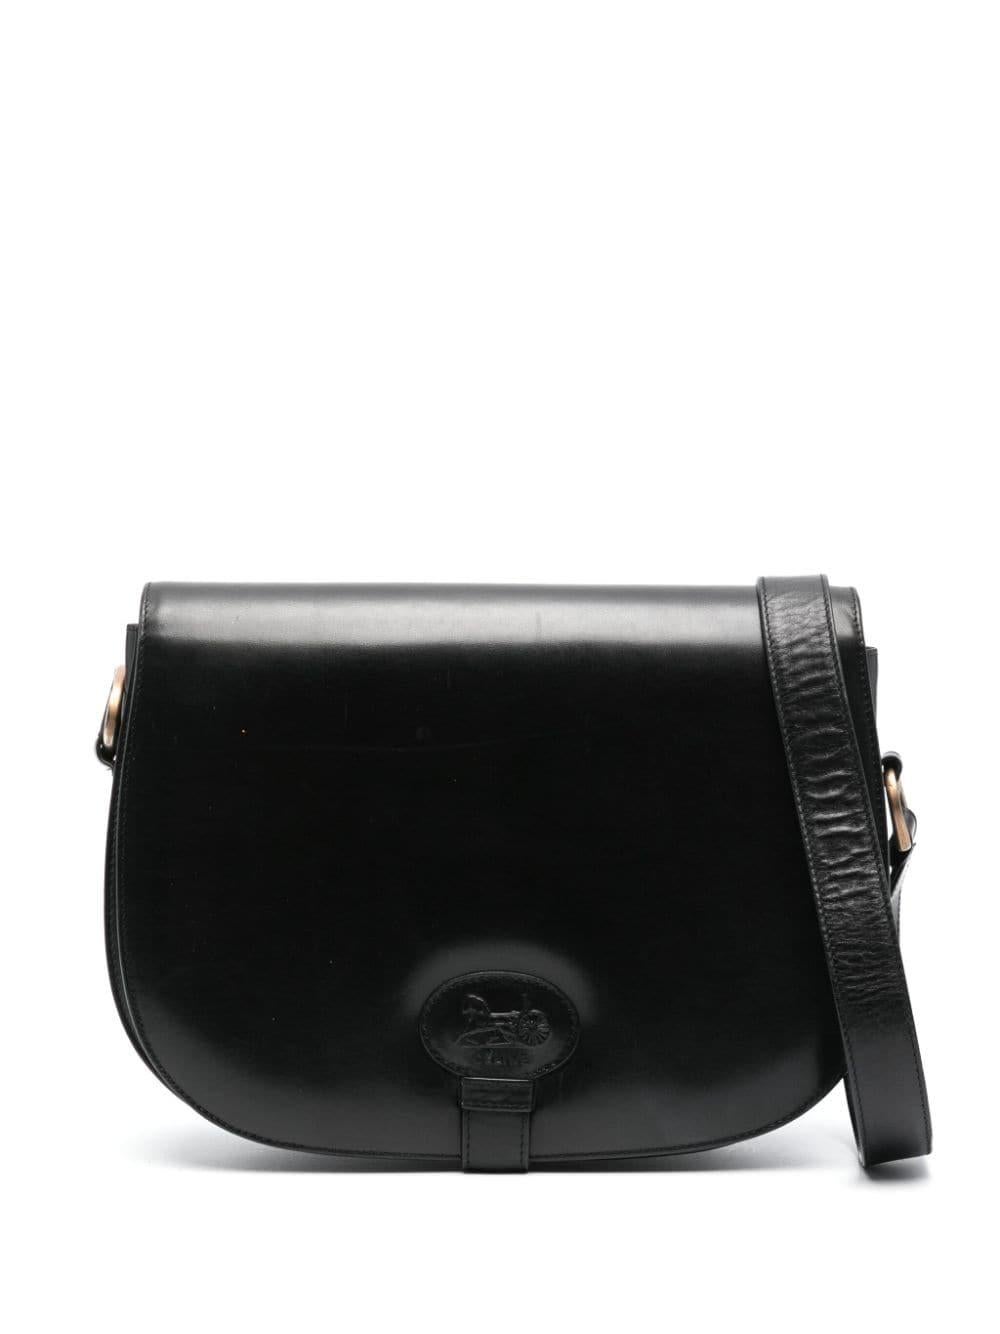 1970s Celine Black Leather Carriage Shoulder Bag For Sale 3